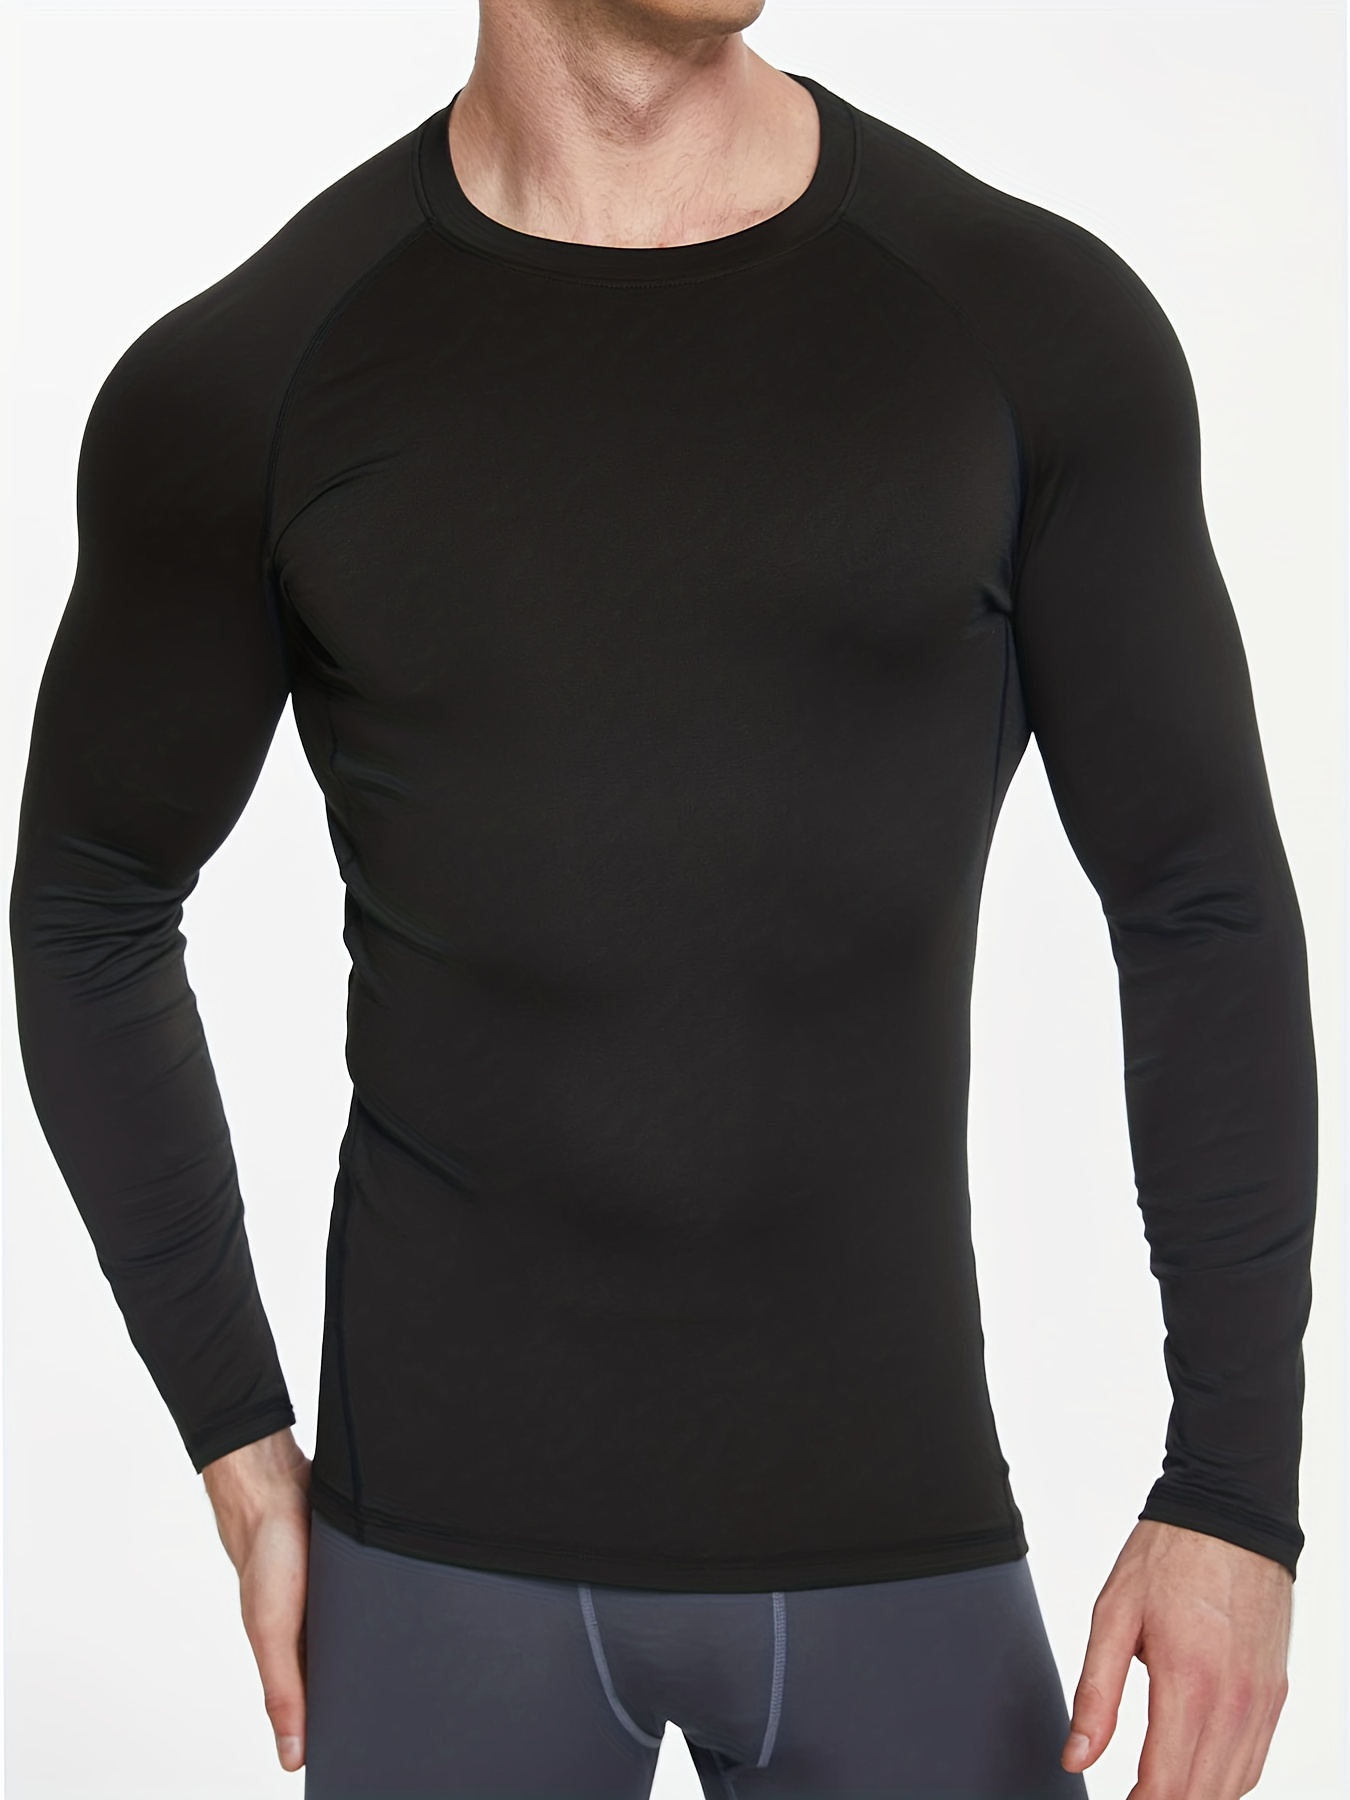 Men's Long Sleeve Workout Shirts: Average savings of 61% at Sierra